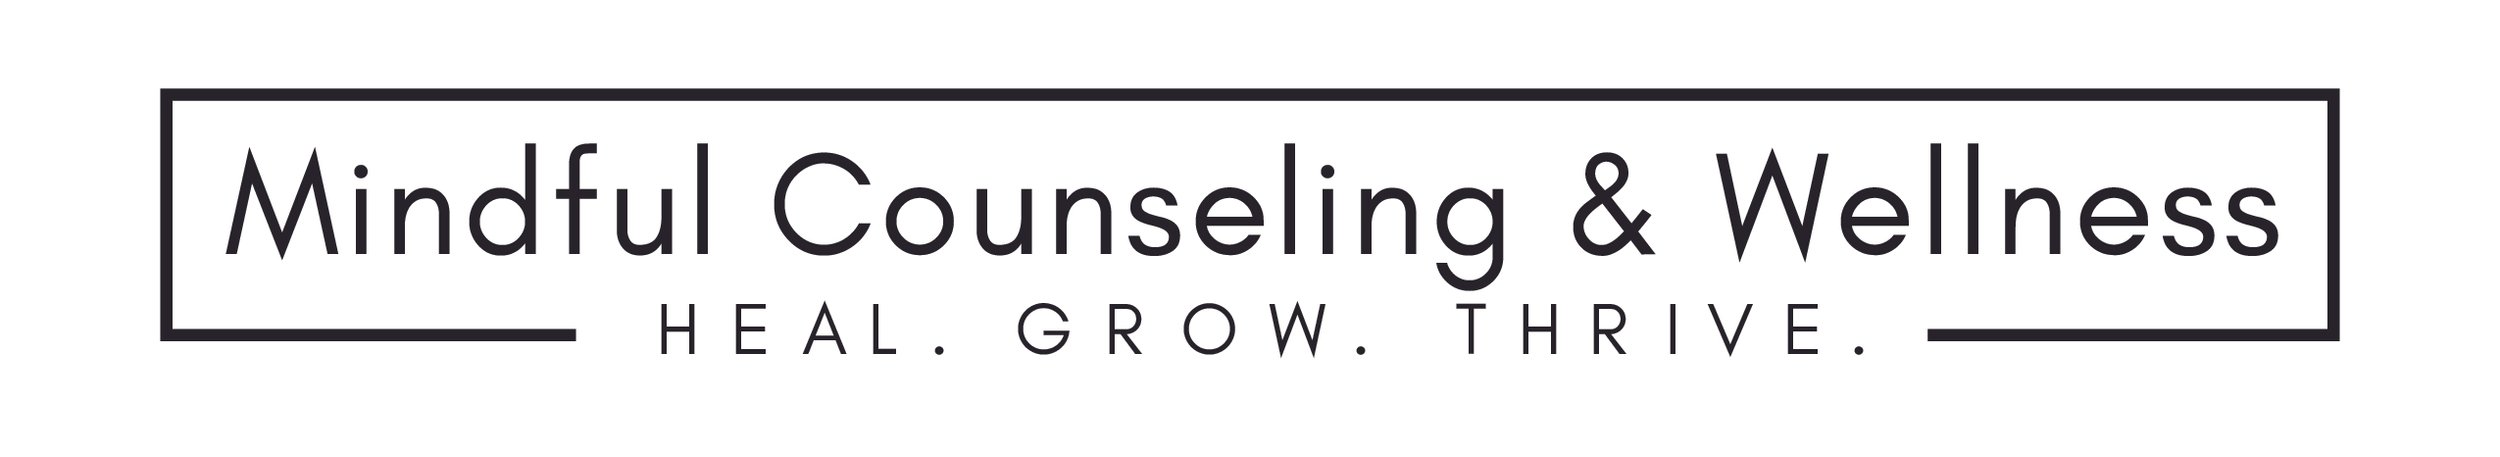 MindfulCounselingWellness_Logo-01.jpg